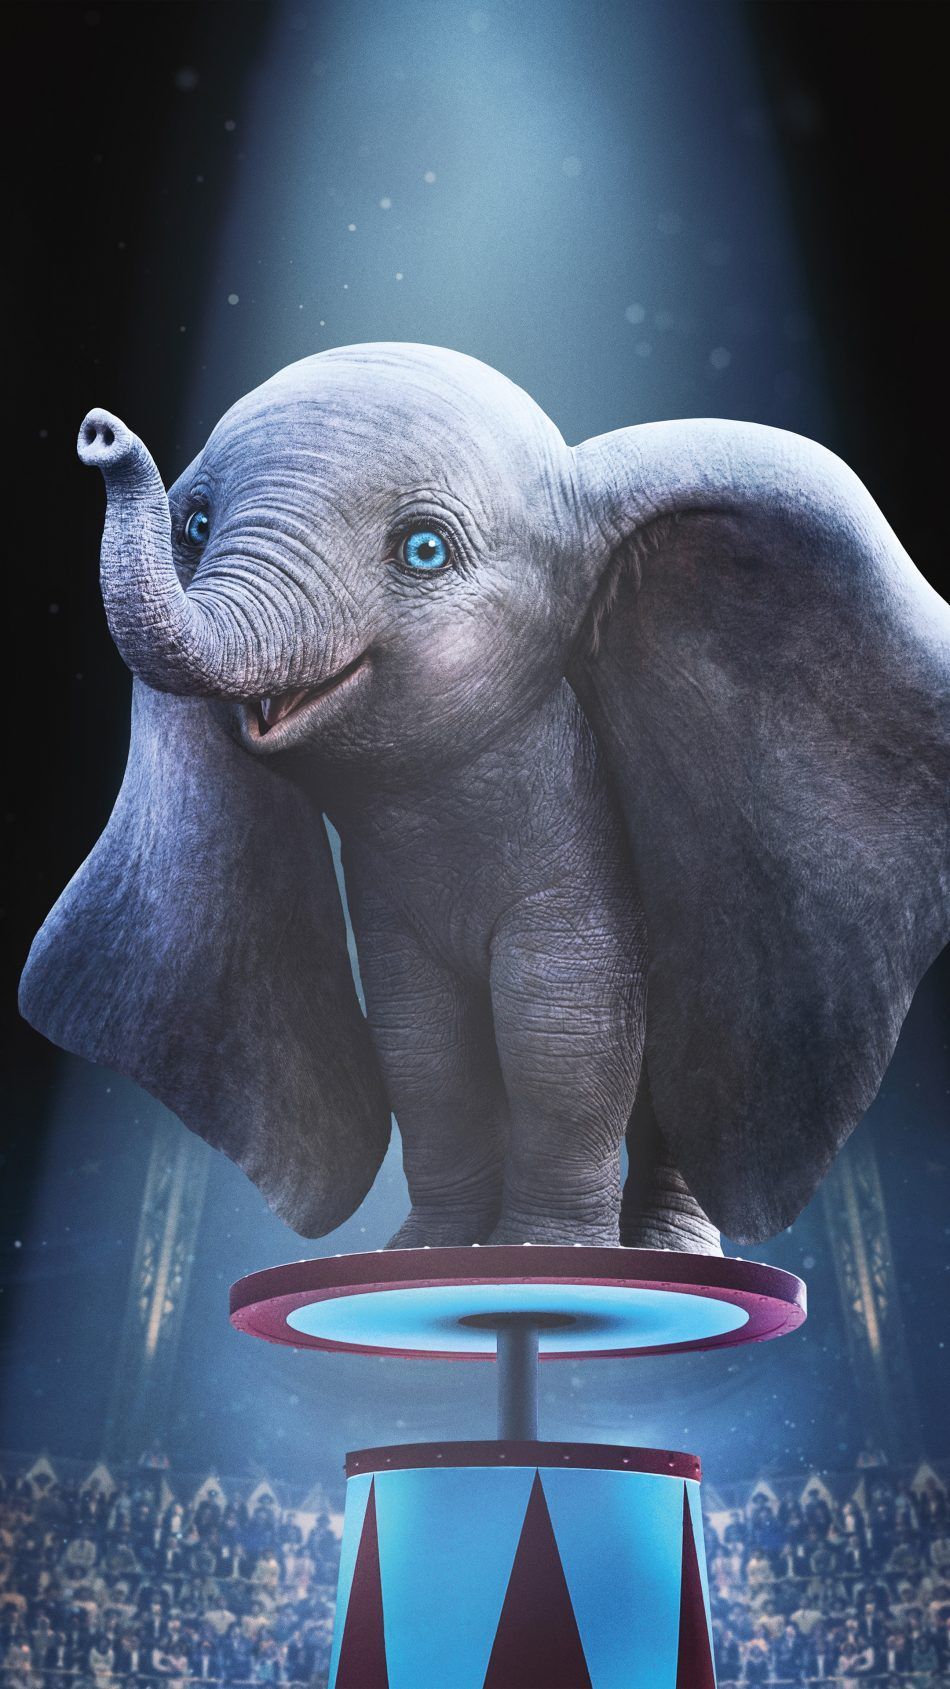 Dumbo Animation 2019 4K Ultra HD Mobile Wallpaper. Disney wallpaper, Dumbo movie, Cute disney wallpaper